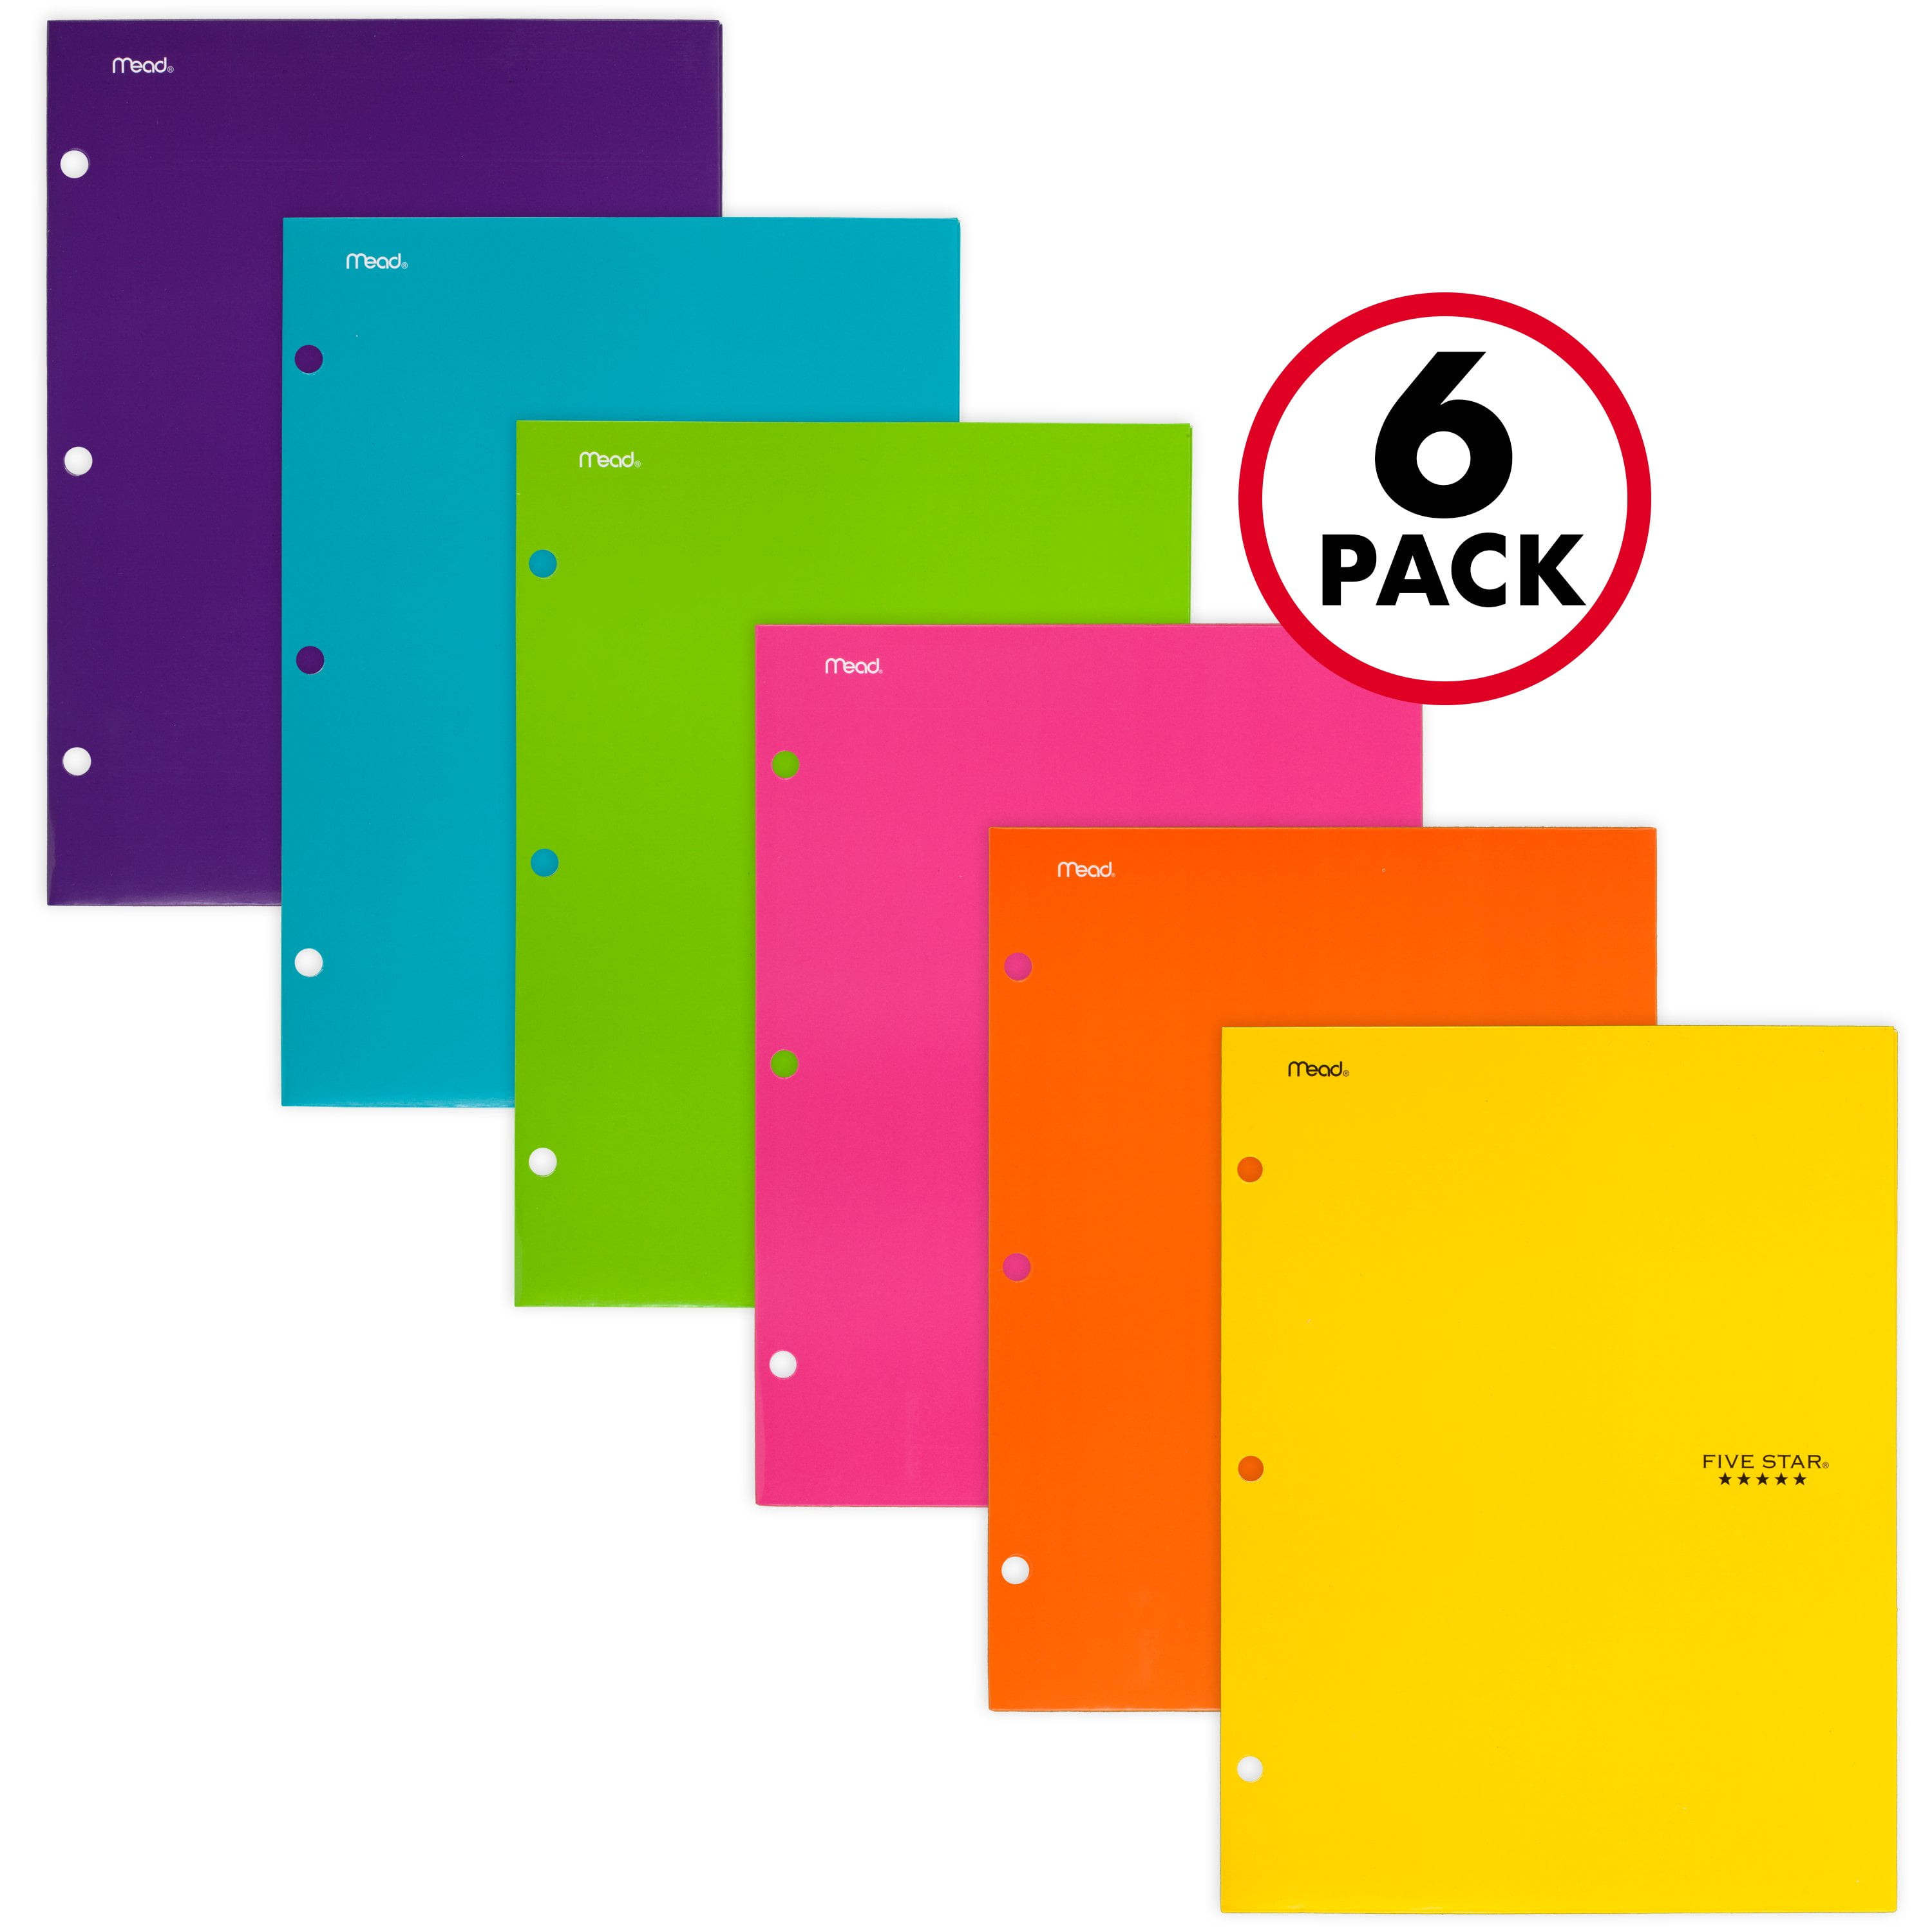 Green Mead Five Star 4 Pocket Solid Paper Folder - D3 Surplus Outlet